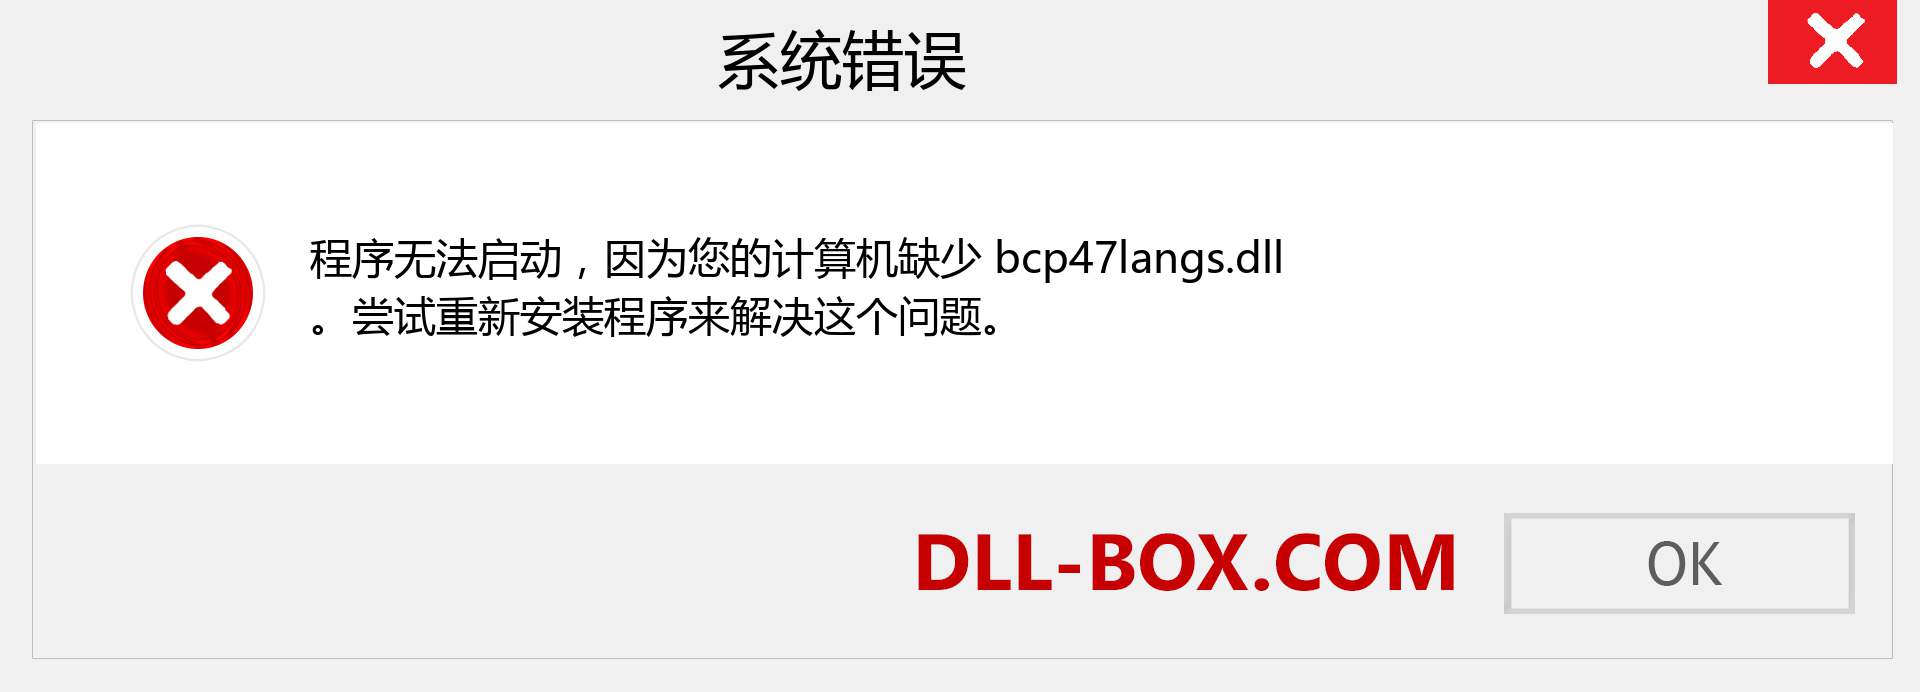 bcp47langs.dll 文件丢失？。 适用于 Windows 7、8、10 的下载 - 修复 Windows、照片、图像上的 bcp47langs dll 丢失错误